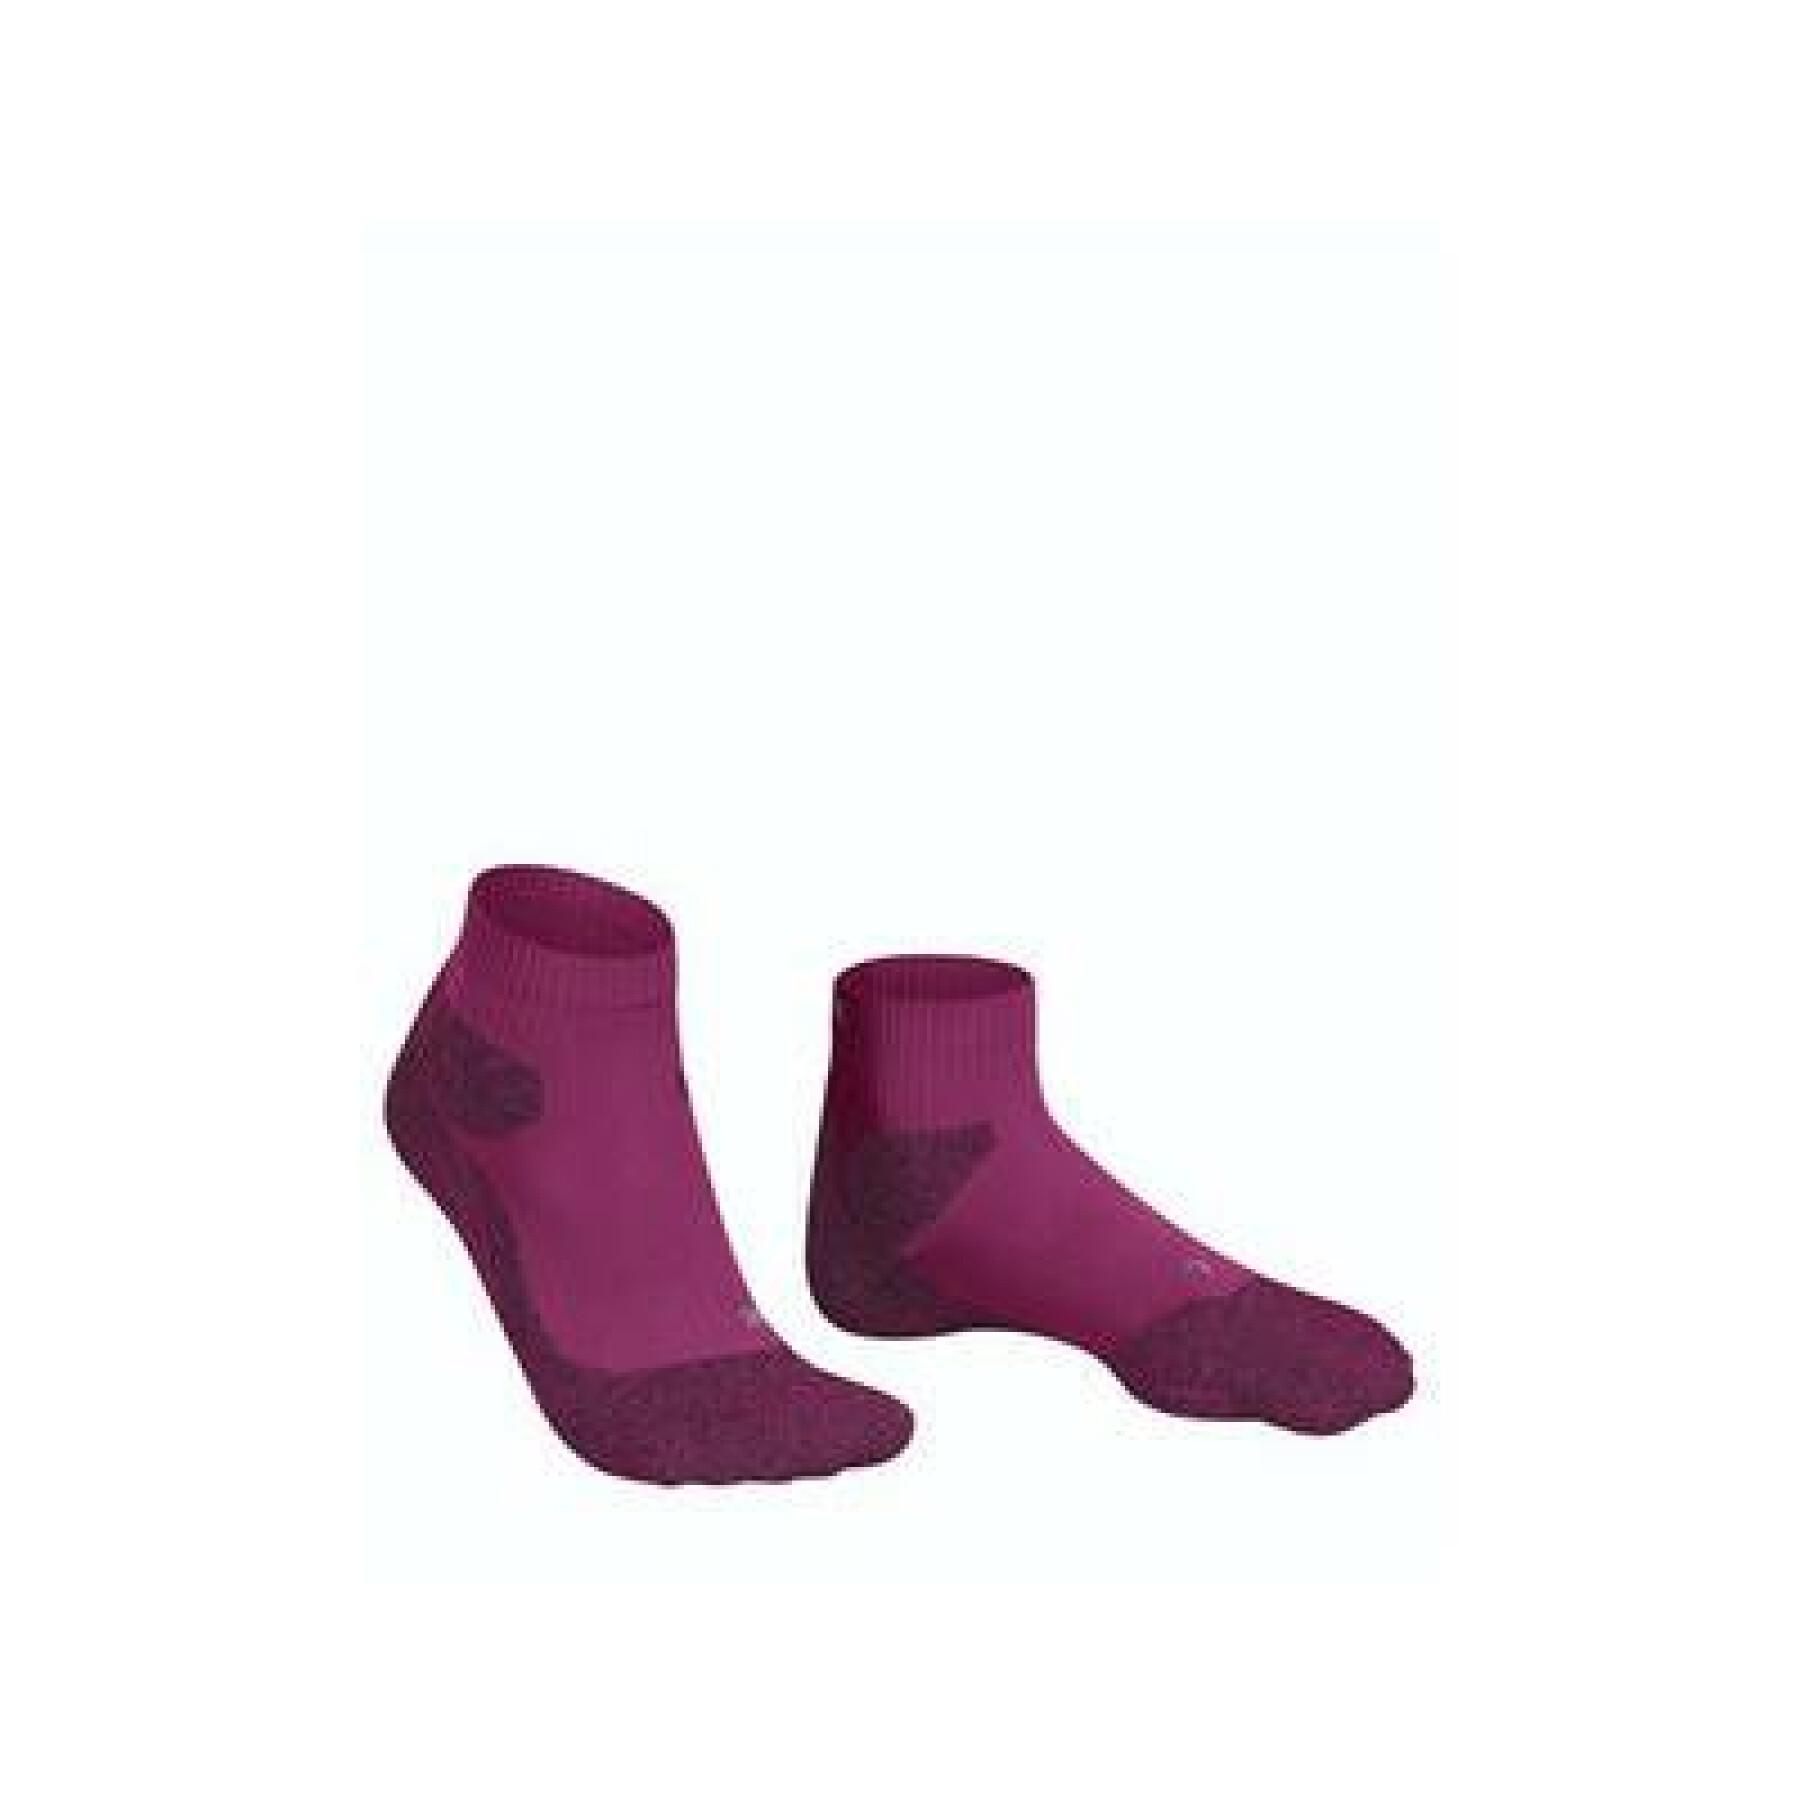 Women's socks Falke Ru Trail